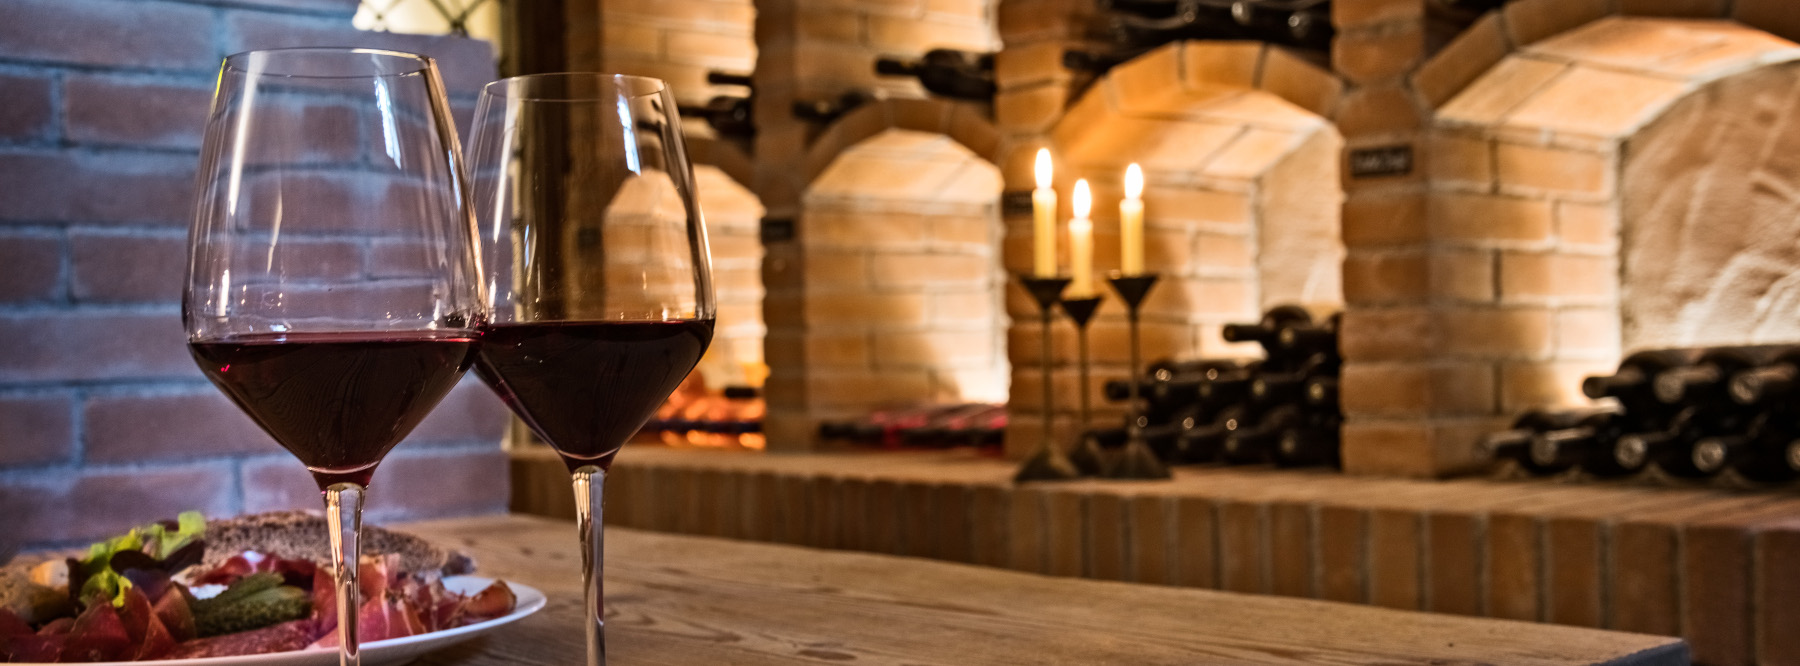 Wine cellar & felsenkeller